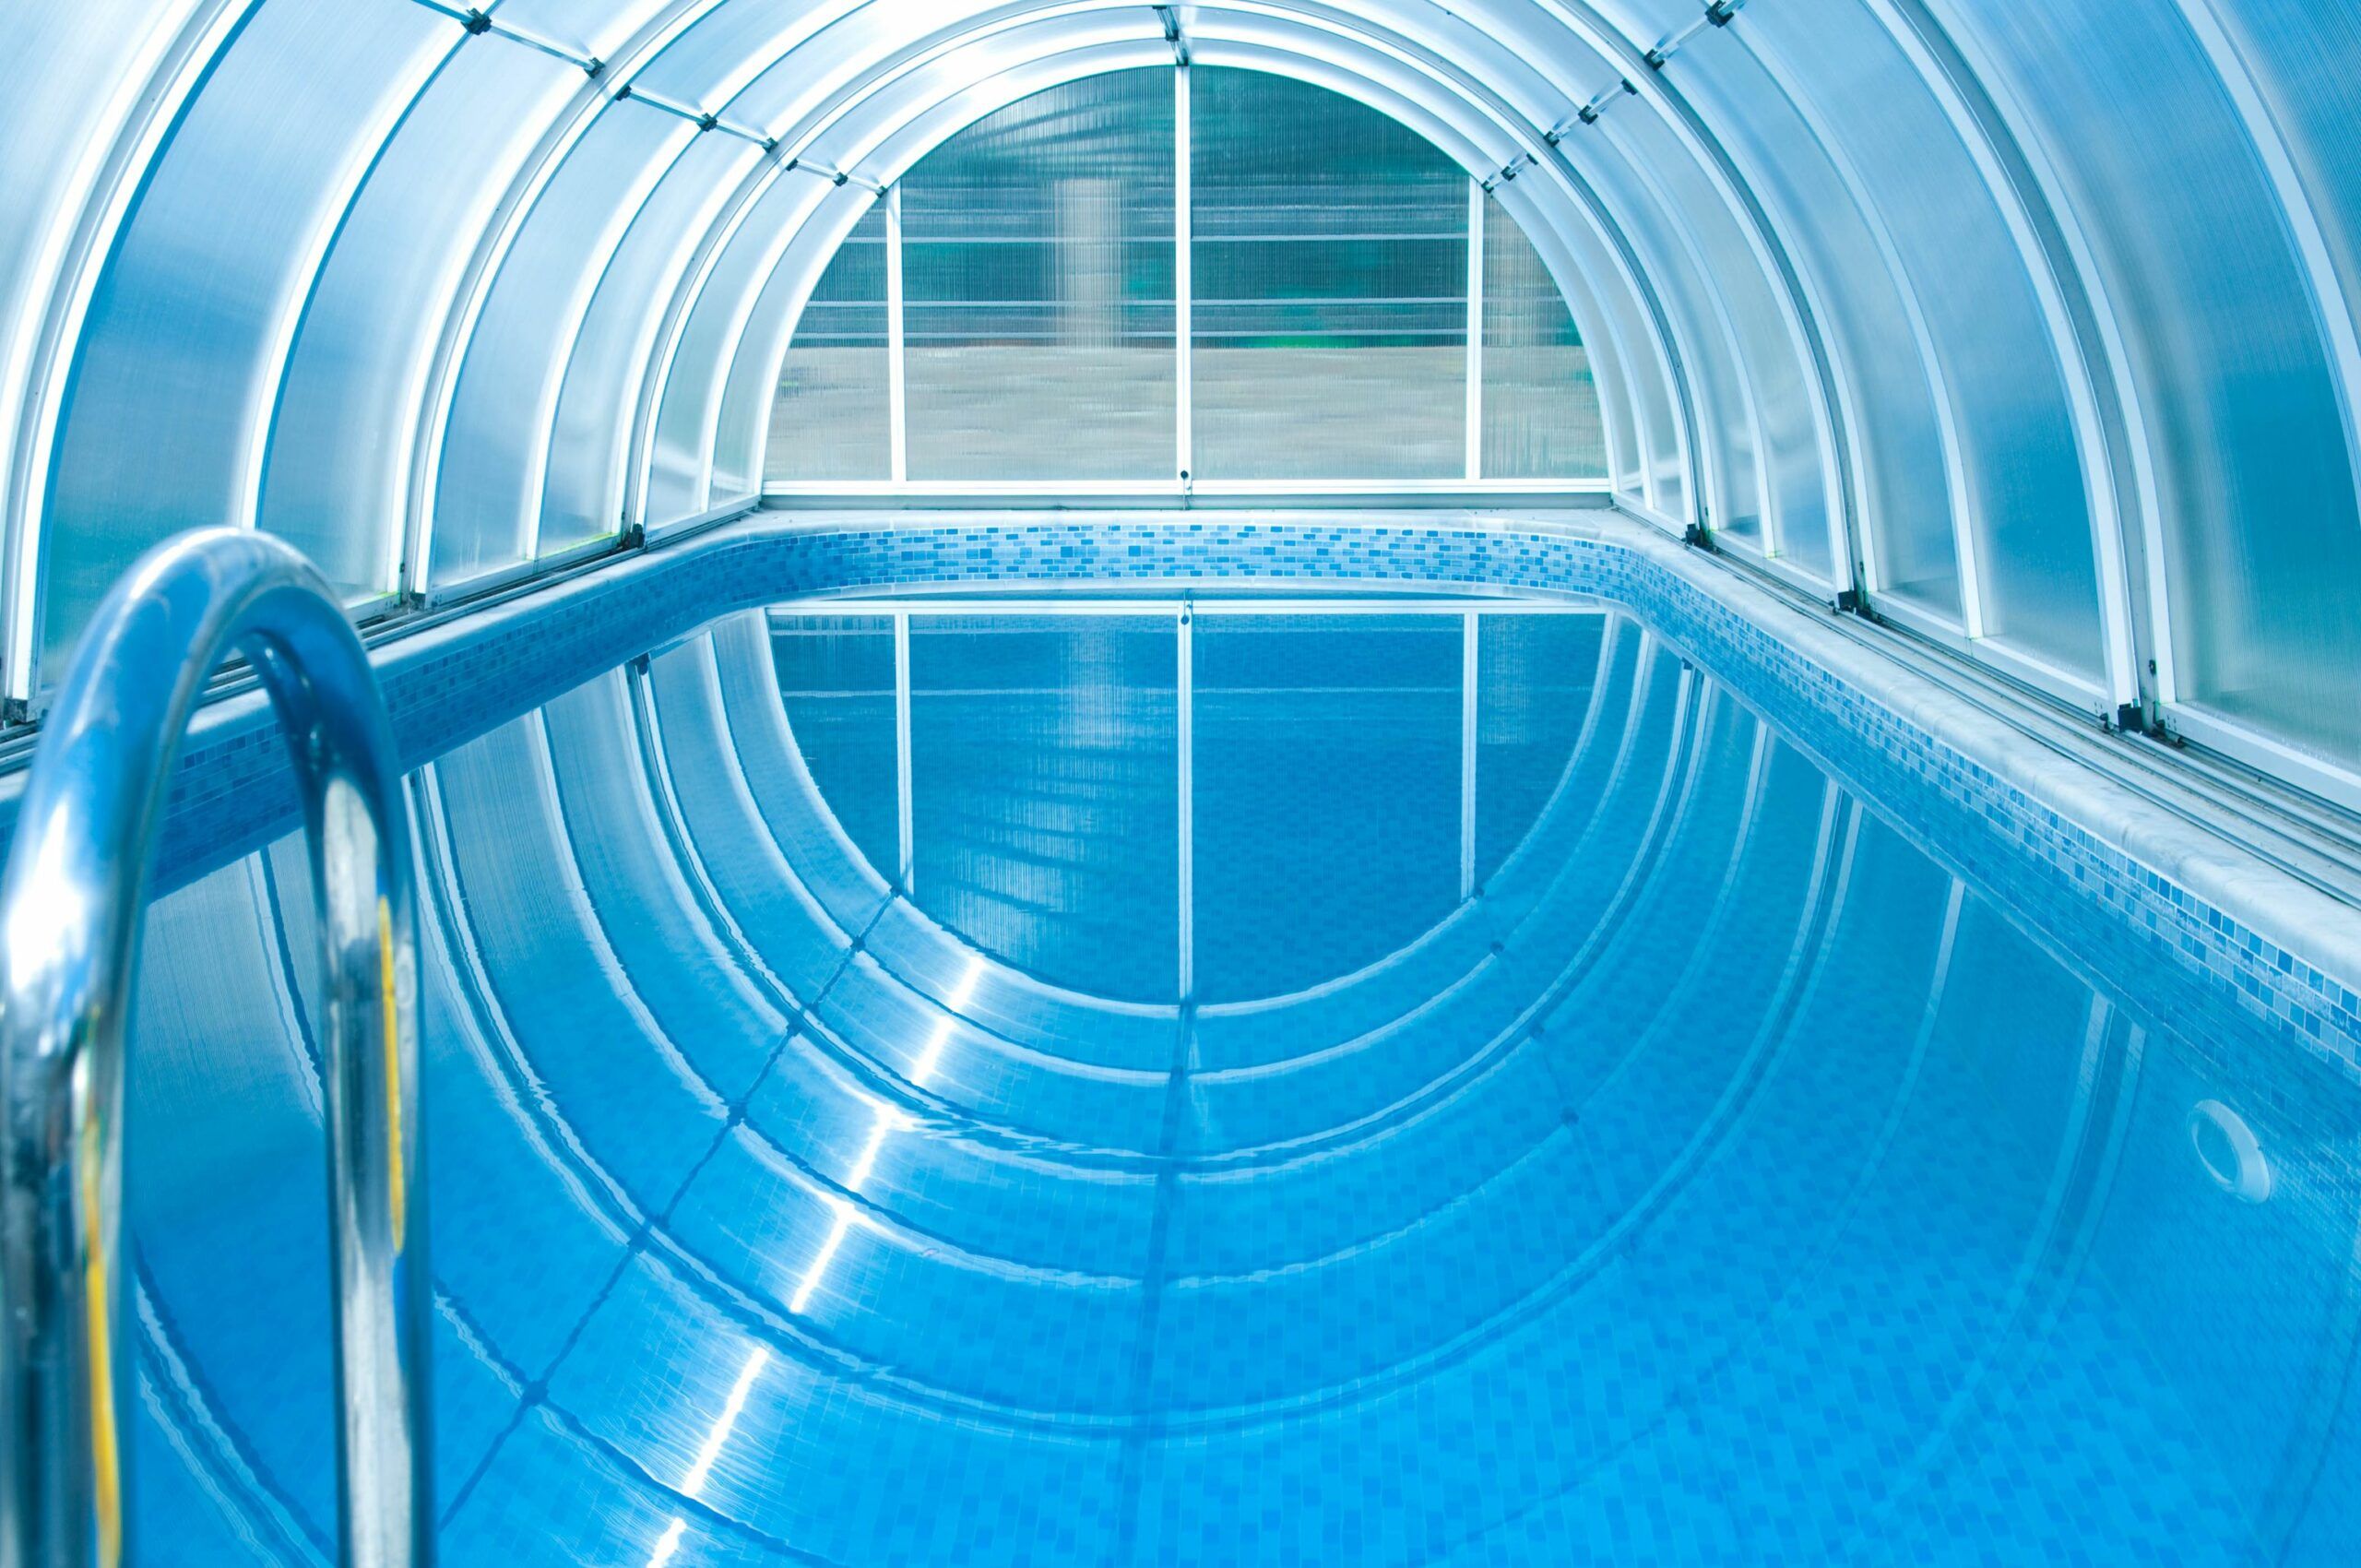 Chauffer sa piscine : 5 idées pour utiliser son bassin toute l